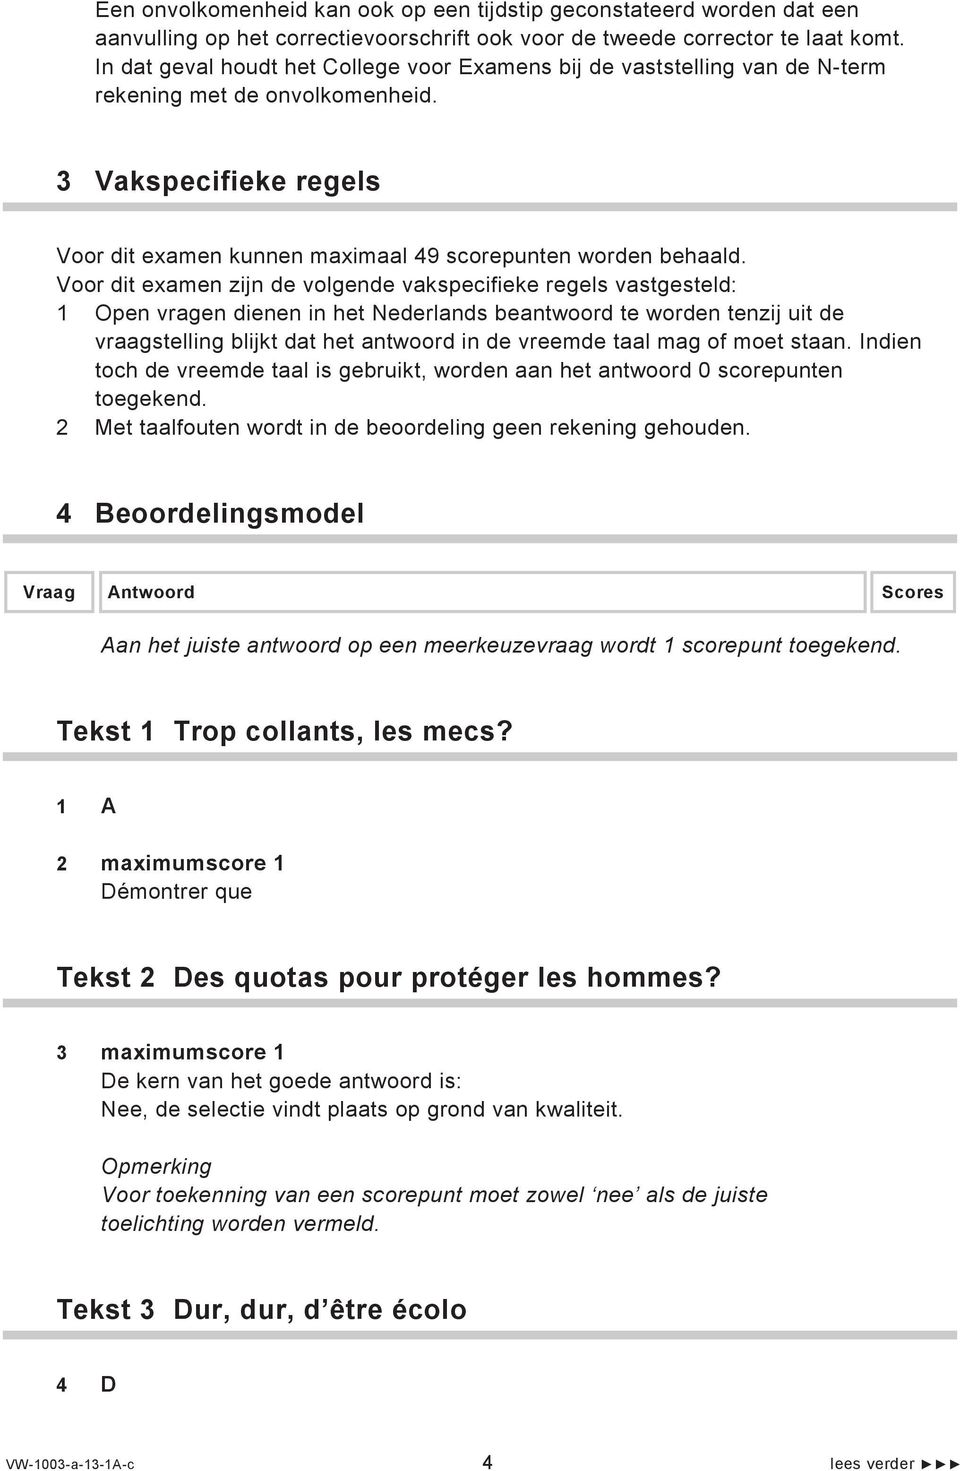 Voor dit examen zijn de volgende vakspecifieke regels vastgesteld: 1 Open vragen dienen in het Nederlands beantwoord te worden tenzij uit de vraagstelling blijkt dat het antwoord in de vreemde taal